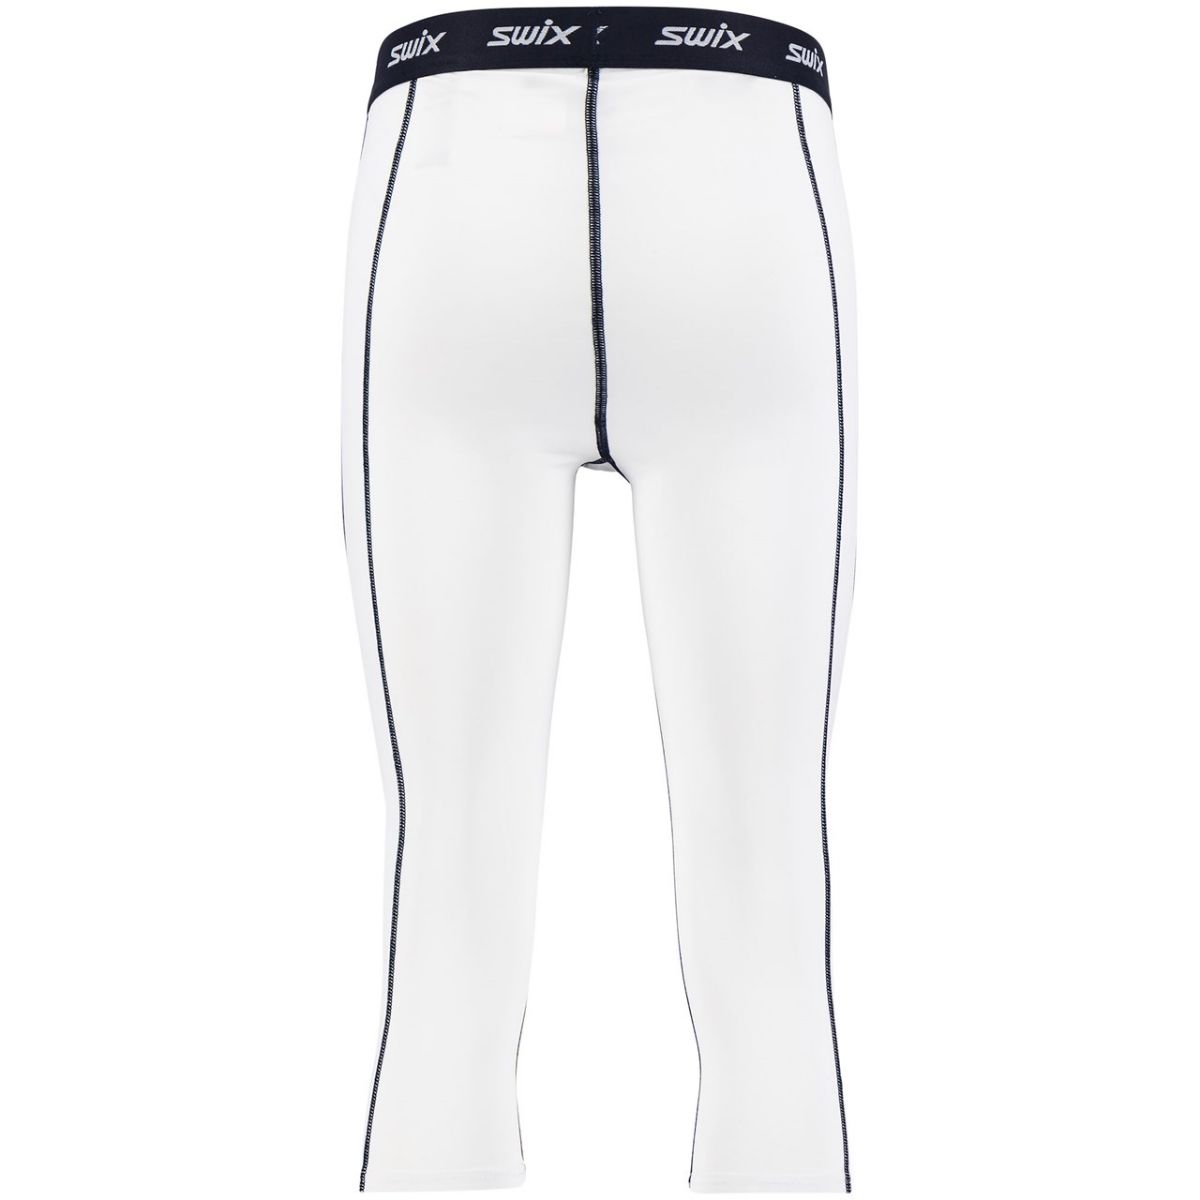 swix-racex-nts-bodywear-34-pant-m-bright-white